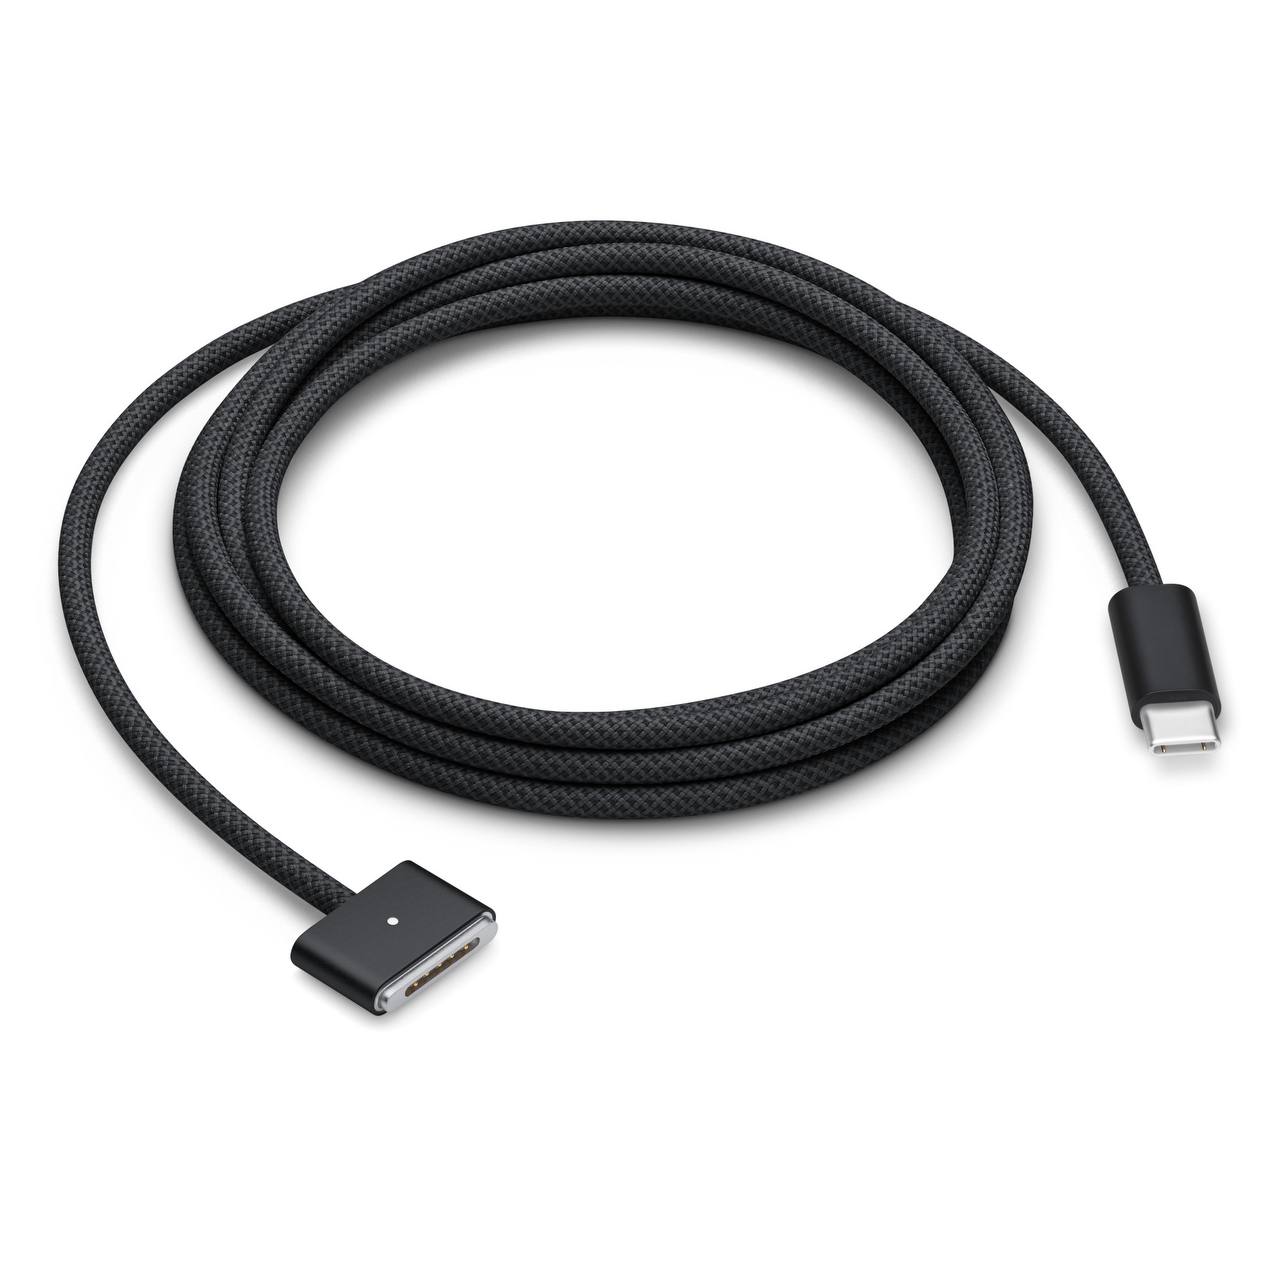 Зарядный кабель остался тот же – MagSafe 3, который теперь доступен в чёрном цвете для версии Space Black